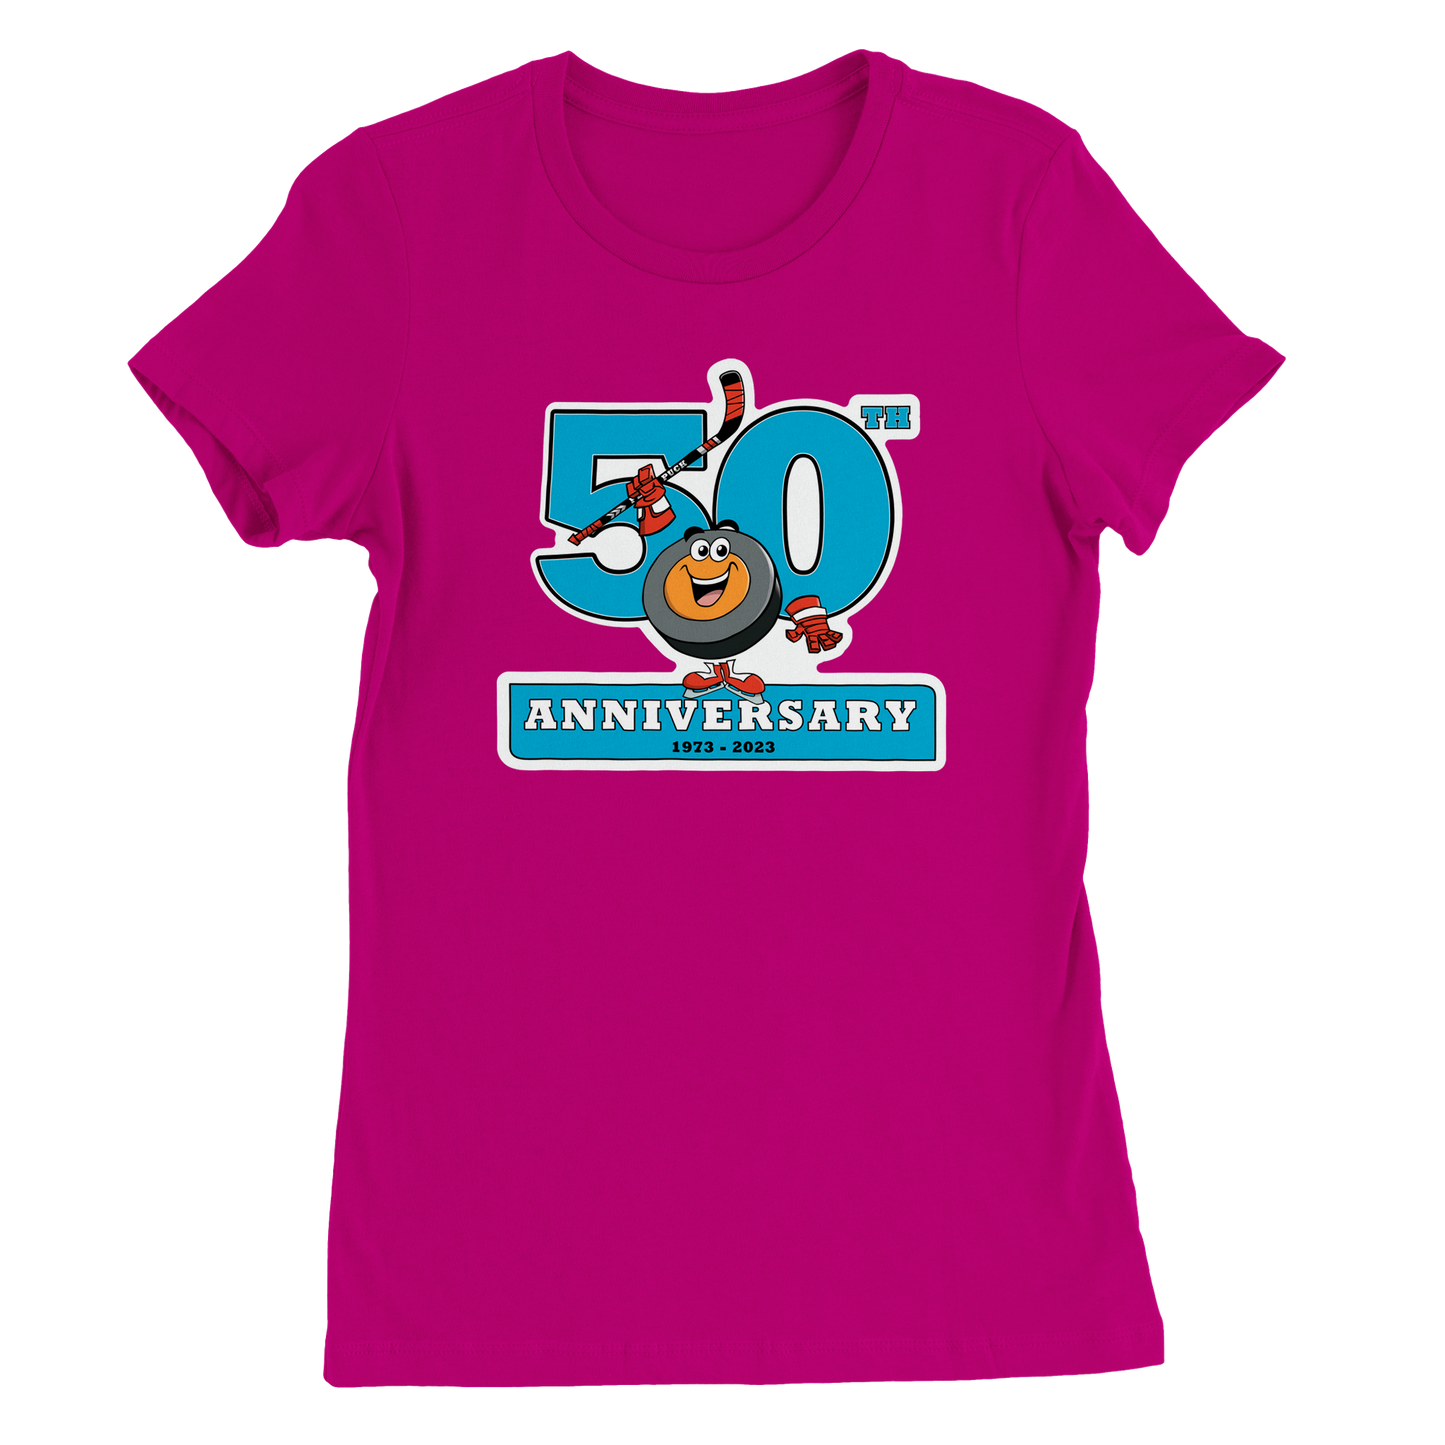 Peter's 50th Anniversary Premium Womens Crewneck T-shirt